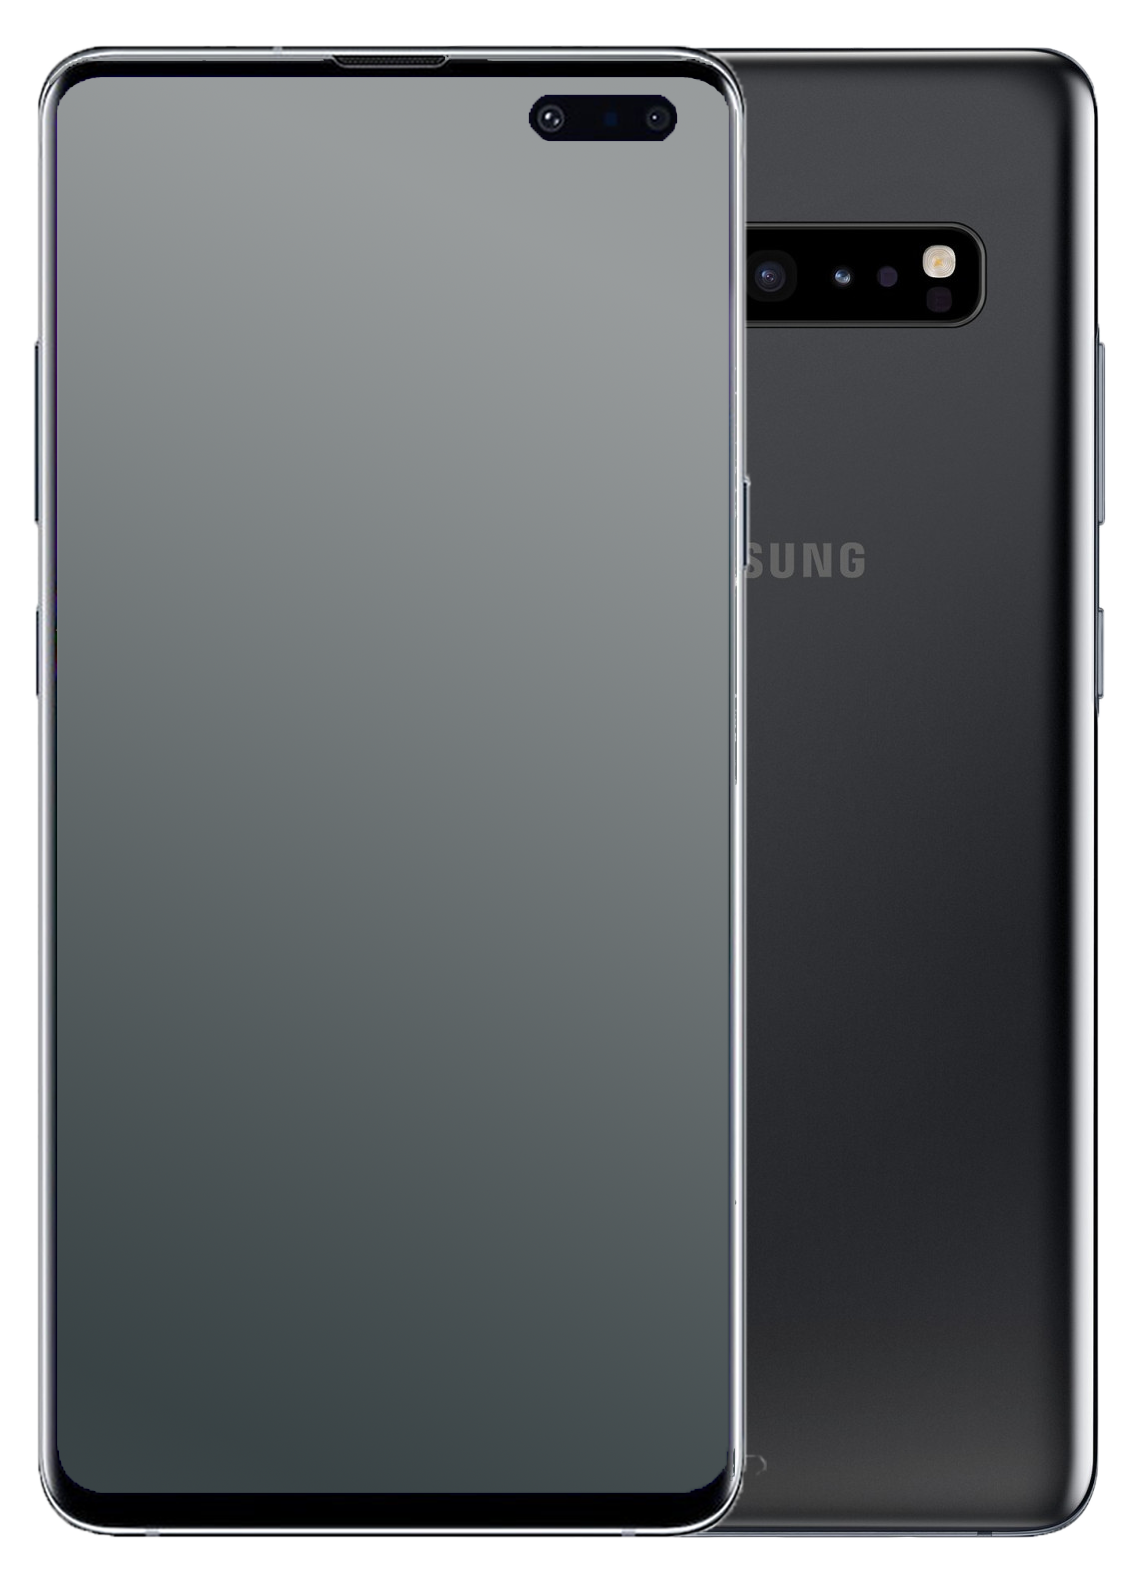 Tributación diferencial del Galaxy S10 5G SIM única